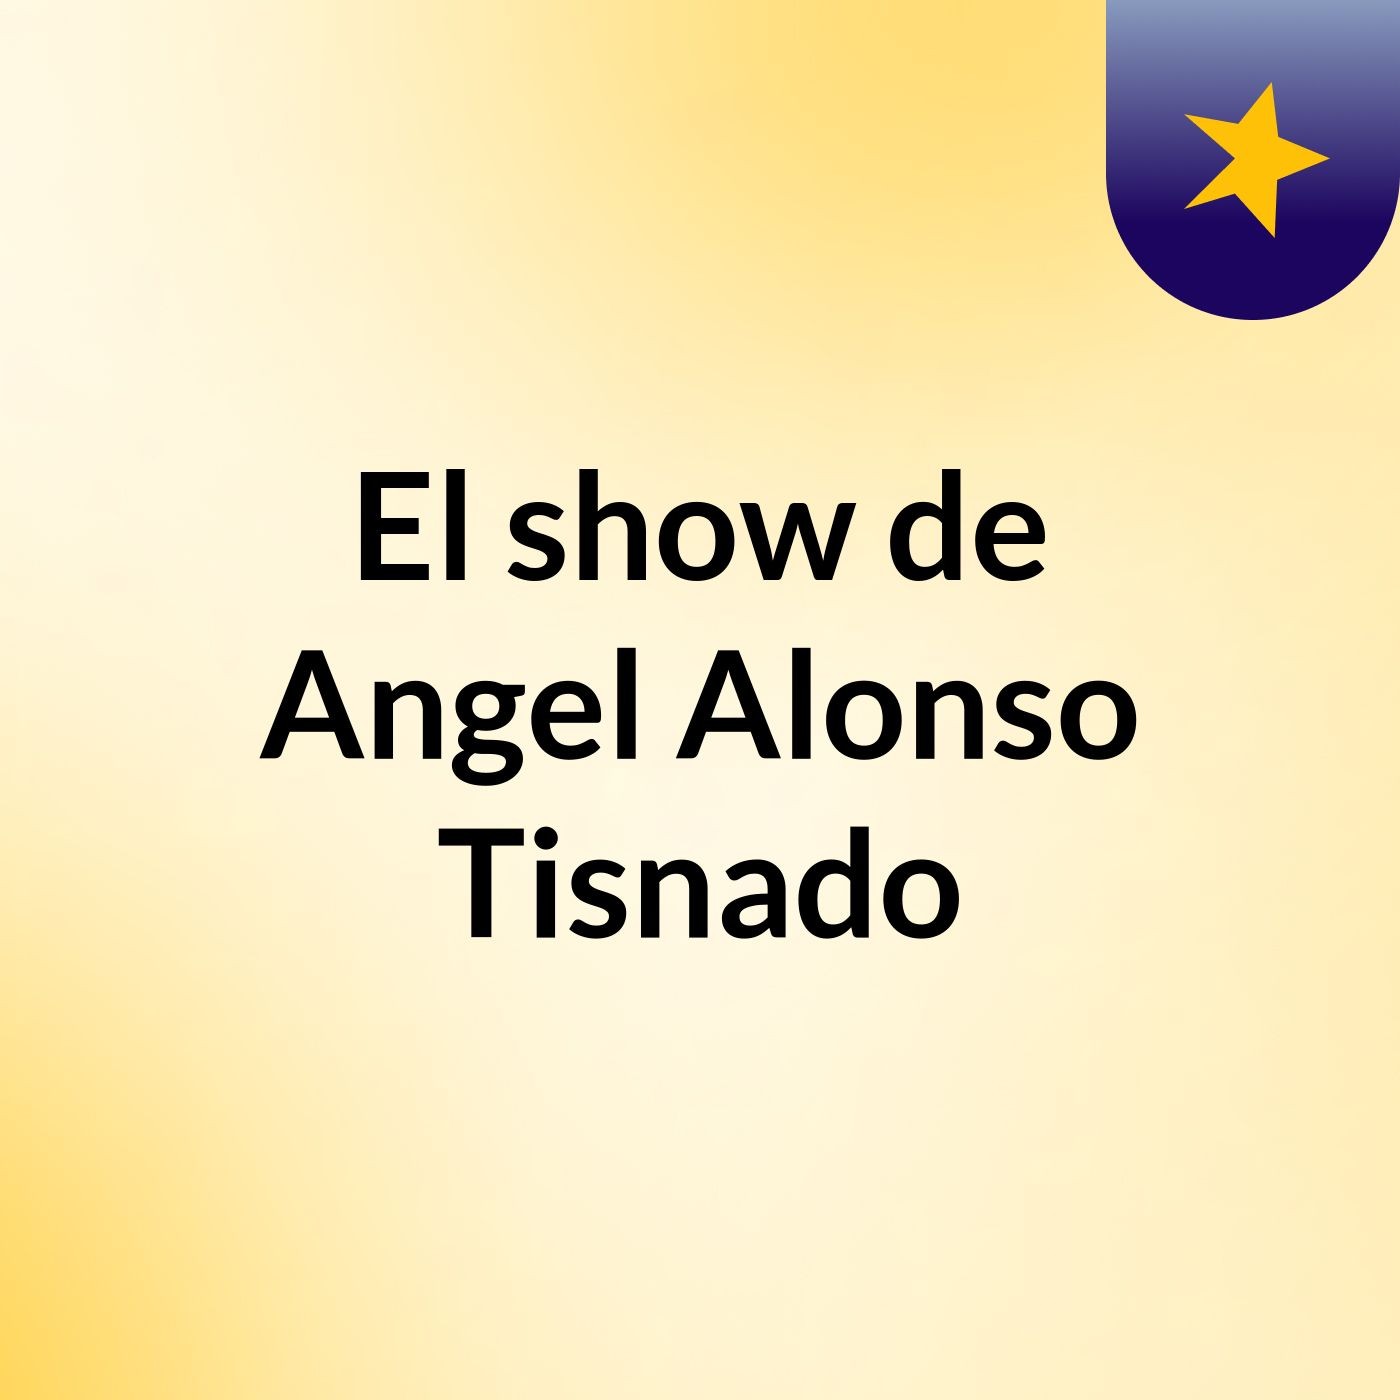 El show de Angel Alonso Tisnado